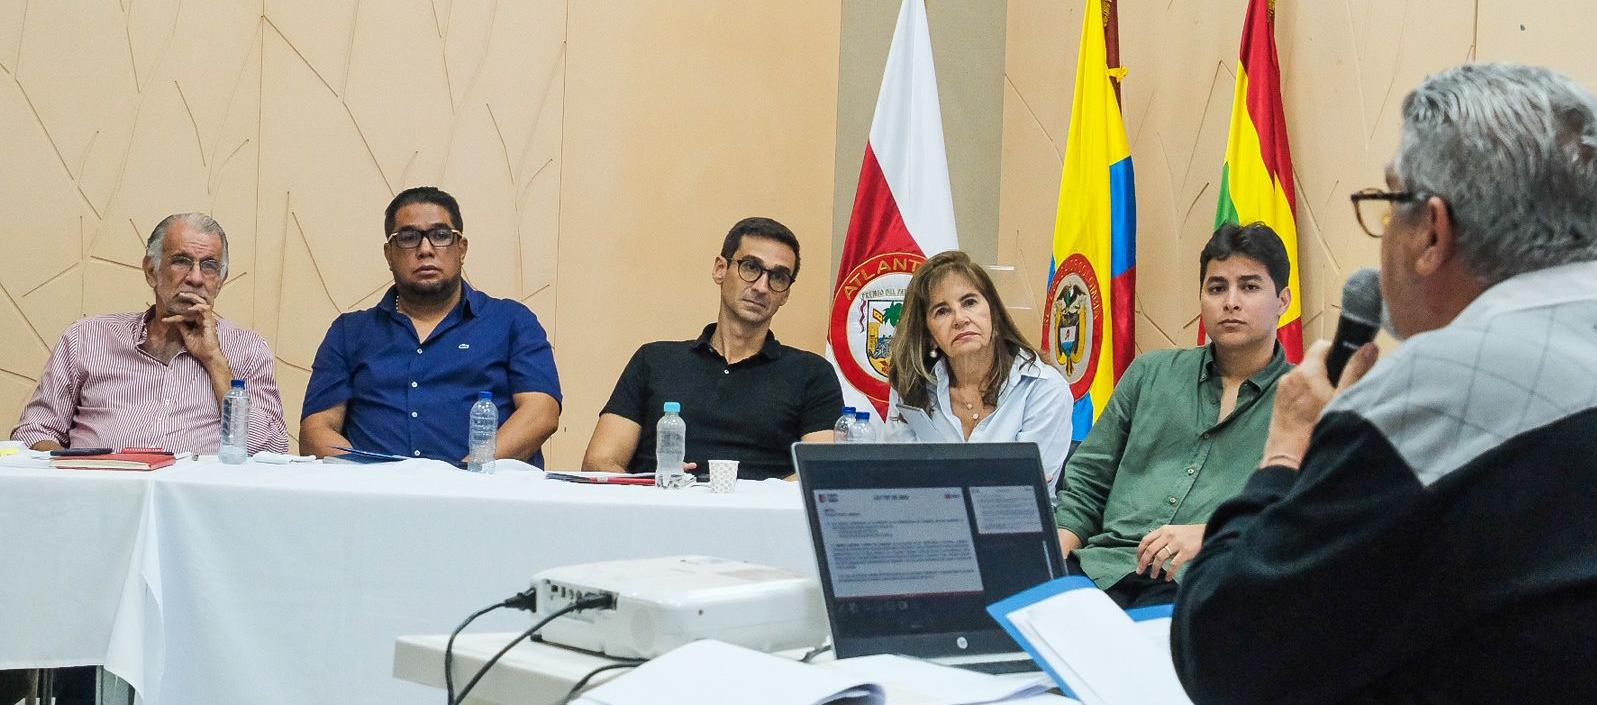 Estuvieron en la reunión el Gobernador Eduardo Verano, el alcalde de Puerto Colombia Plinio Cedeño, el secretario del Interior José Luque, diputada Lourdes López y el vocero Eduardo Munarriz.